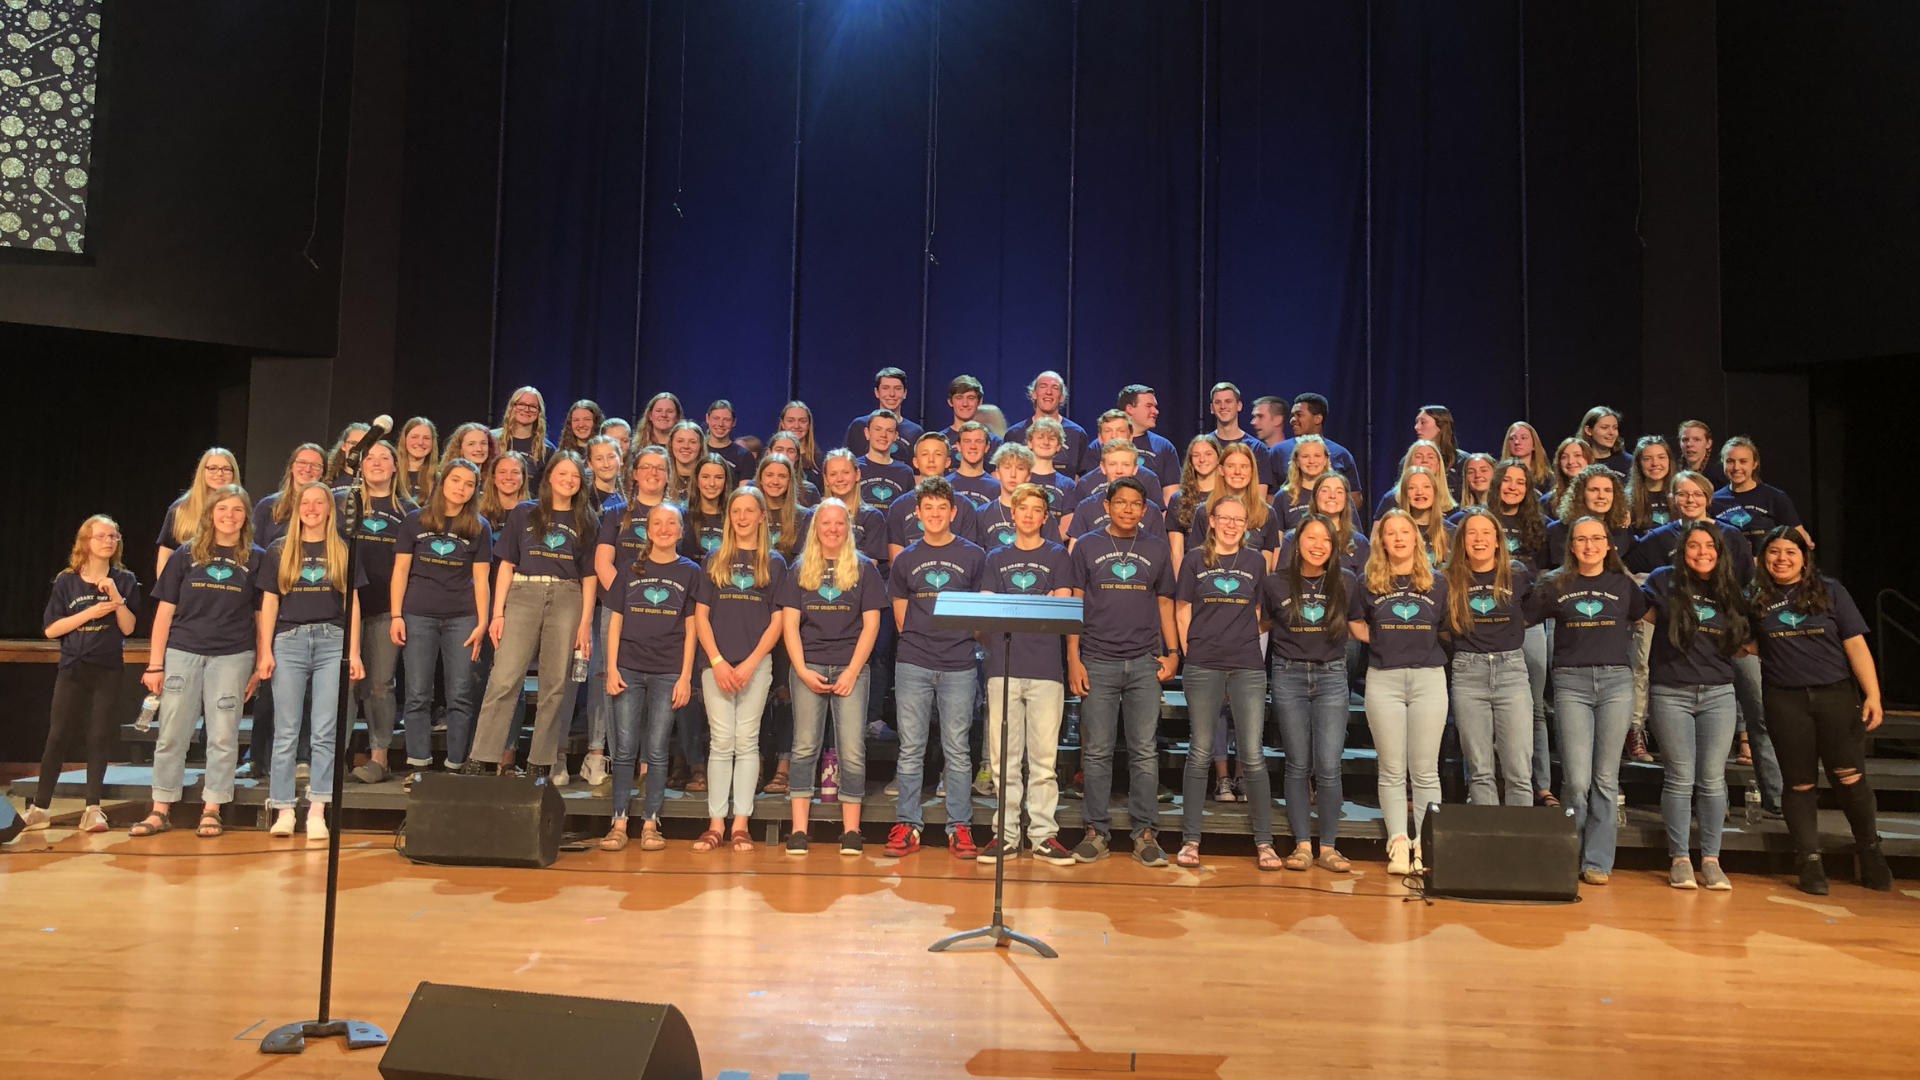 11th Annual Teen Gospel Choir